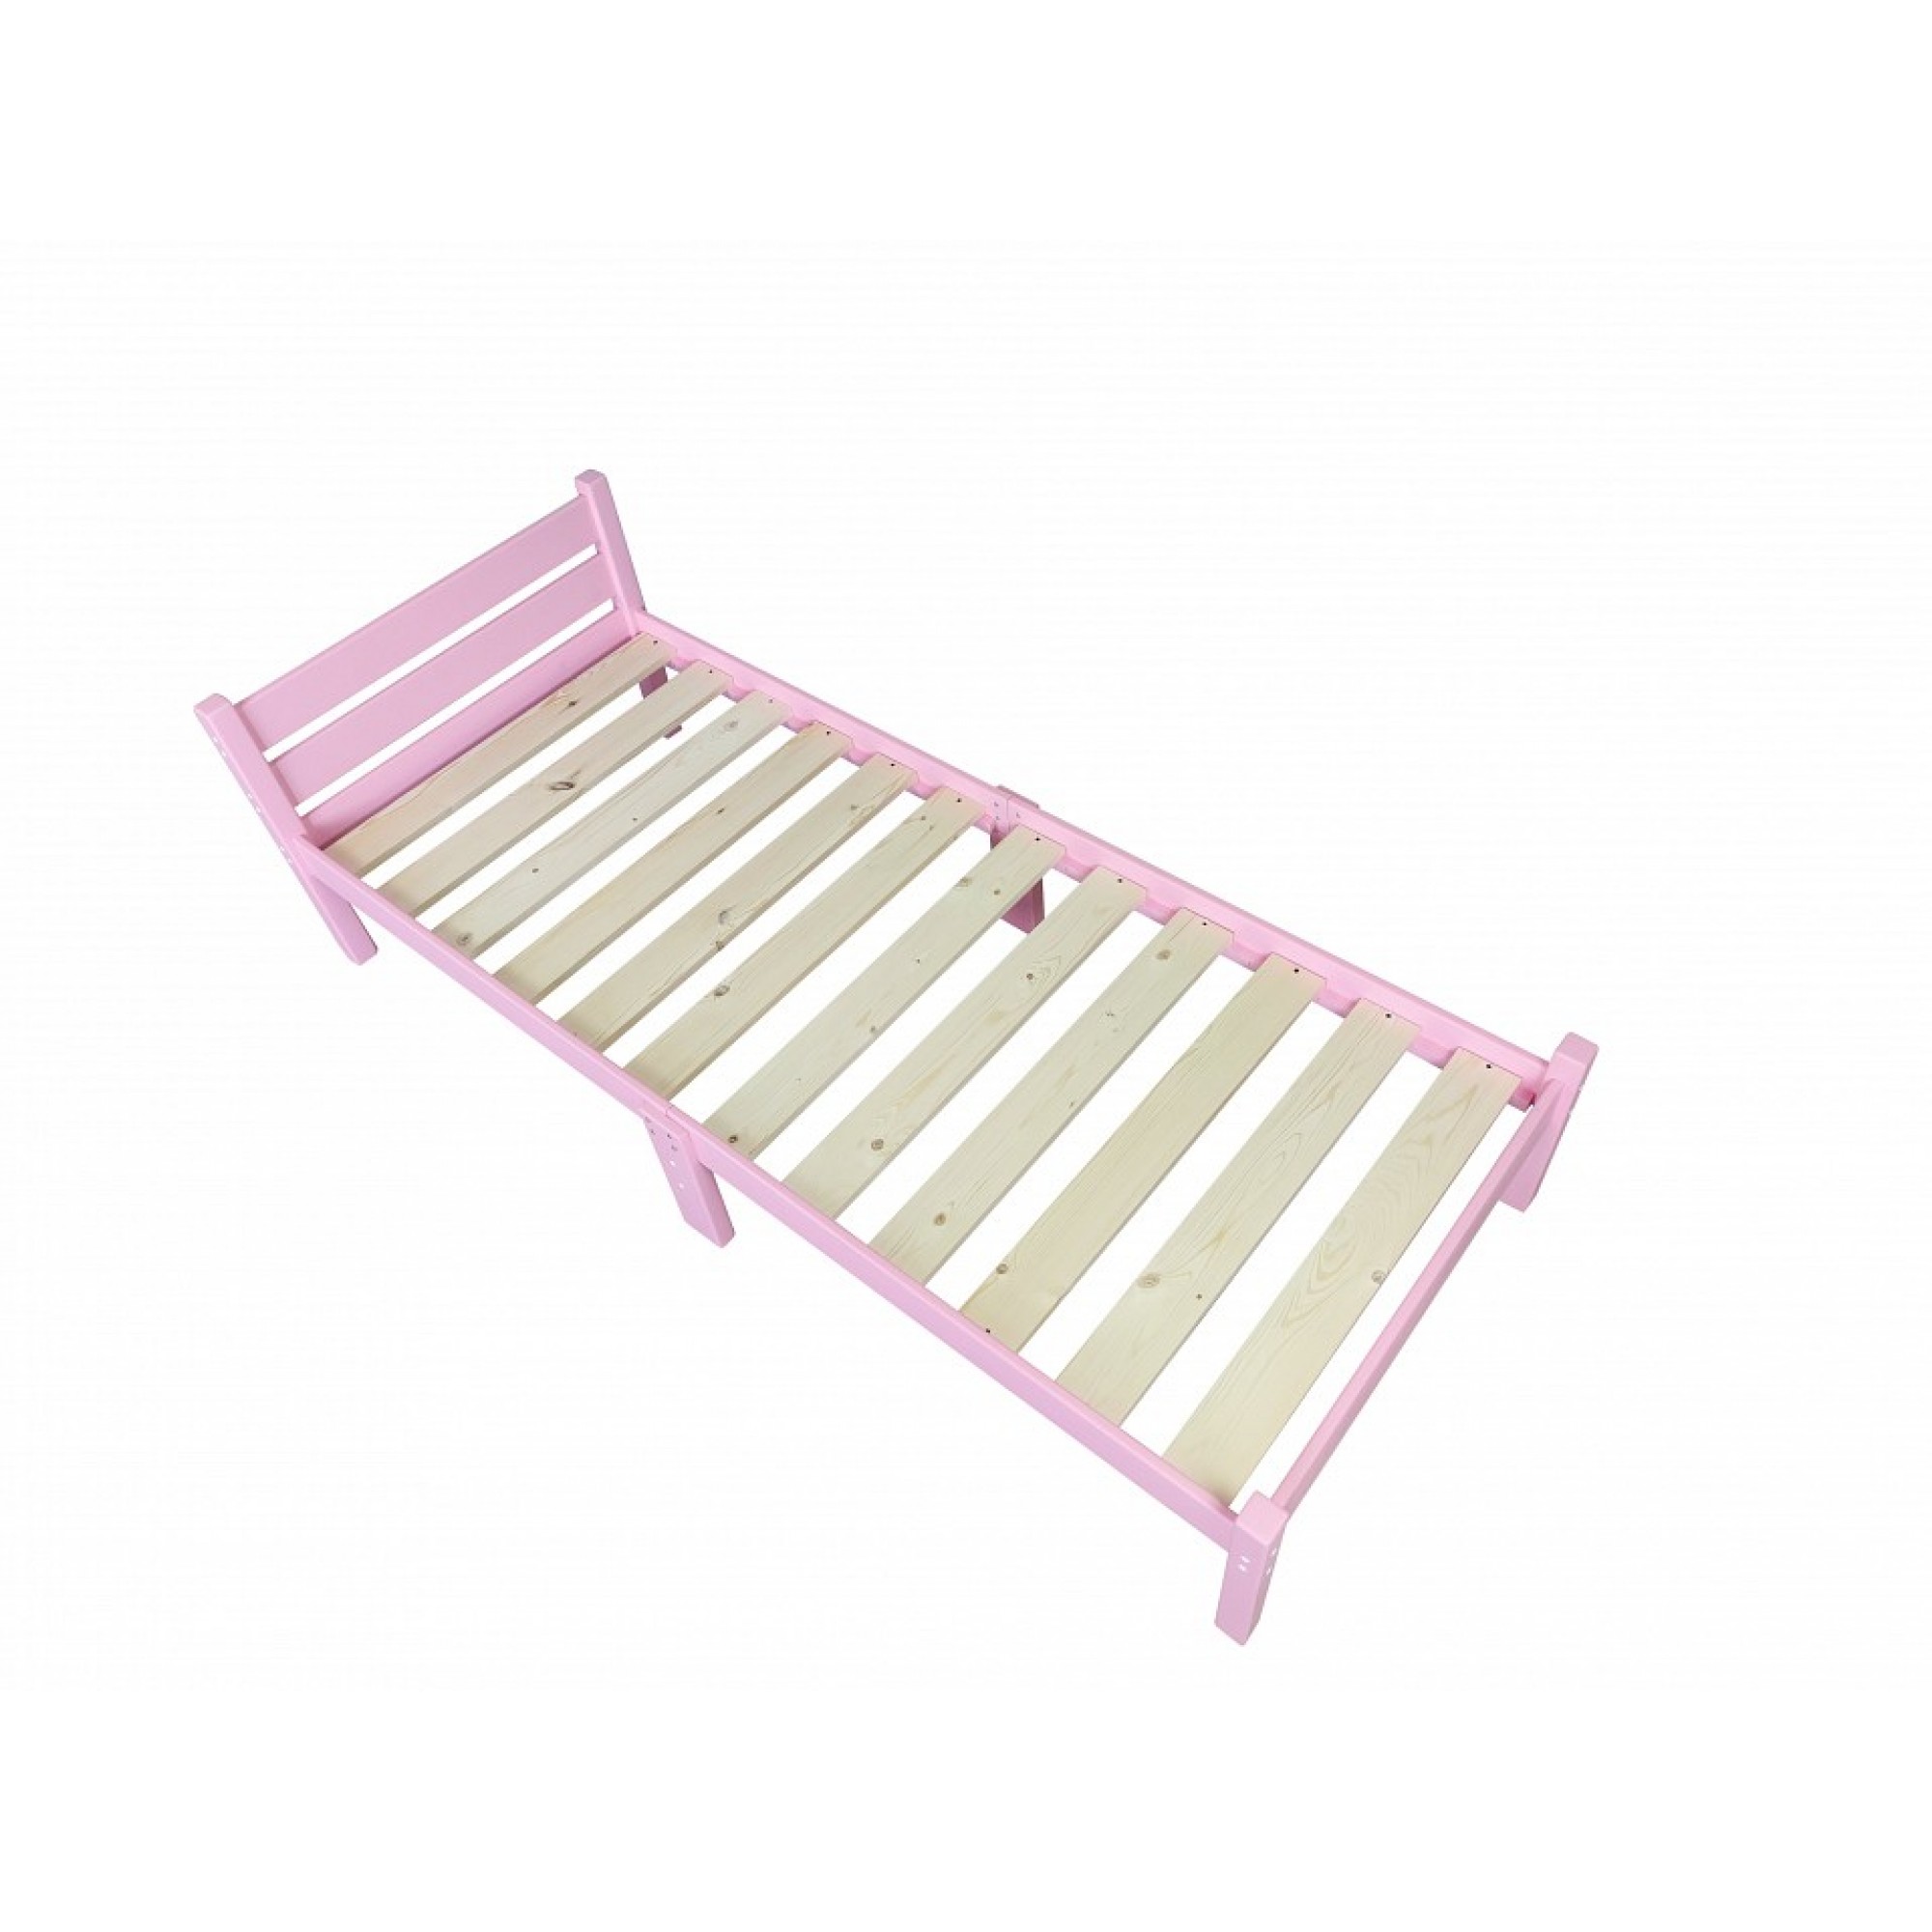 Кровать односпальная Компакт 2000x600 розовый    SLR_kompakt60roz